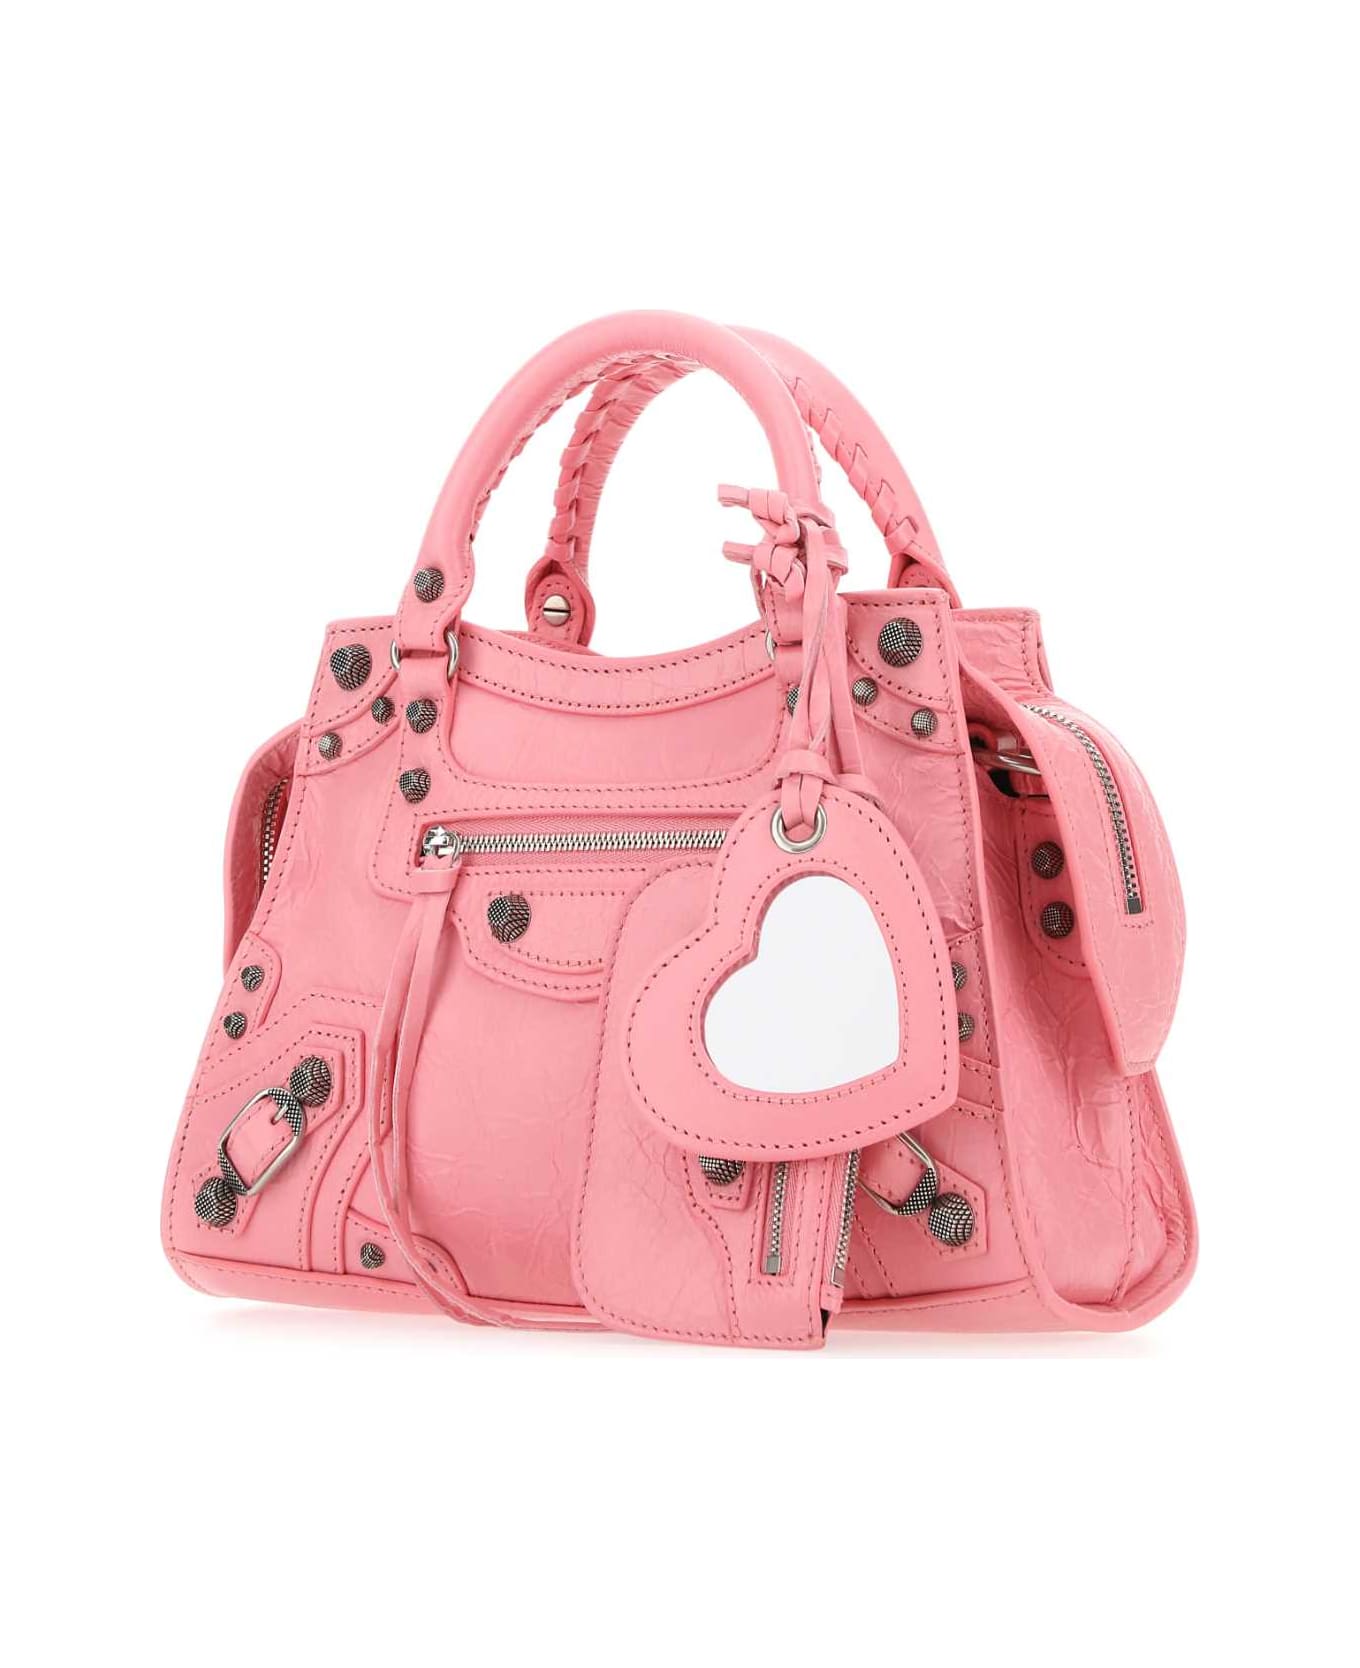 Balenciaga Pink Nappa Leather Neo Cagole Xs Handbag - SWEET PINK